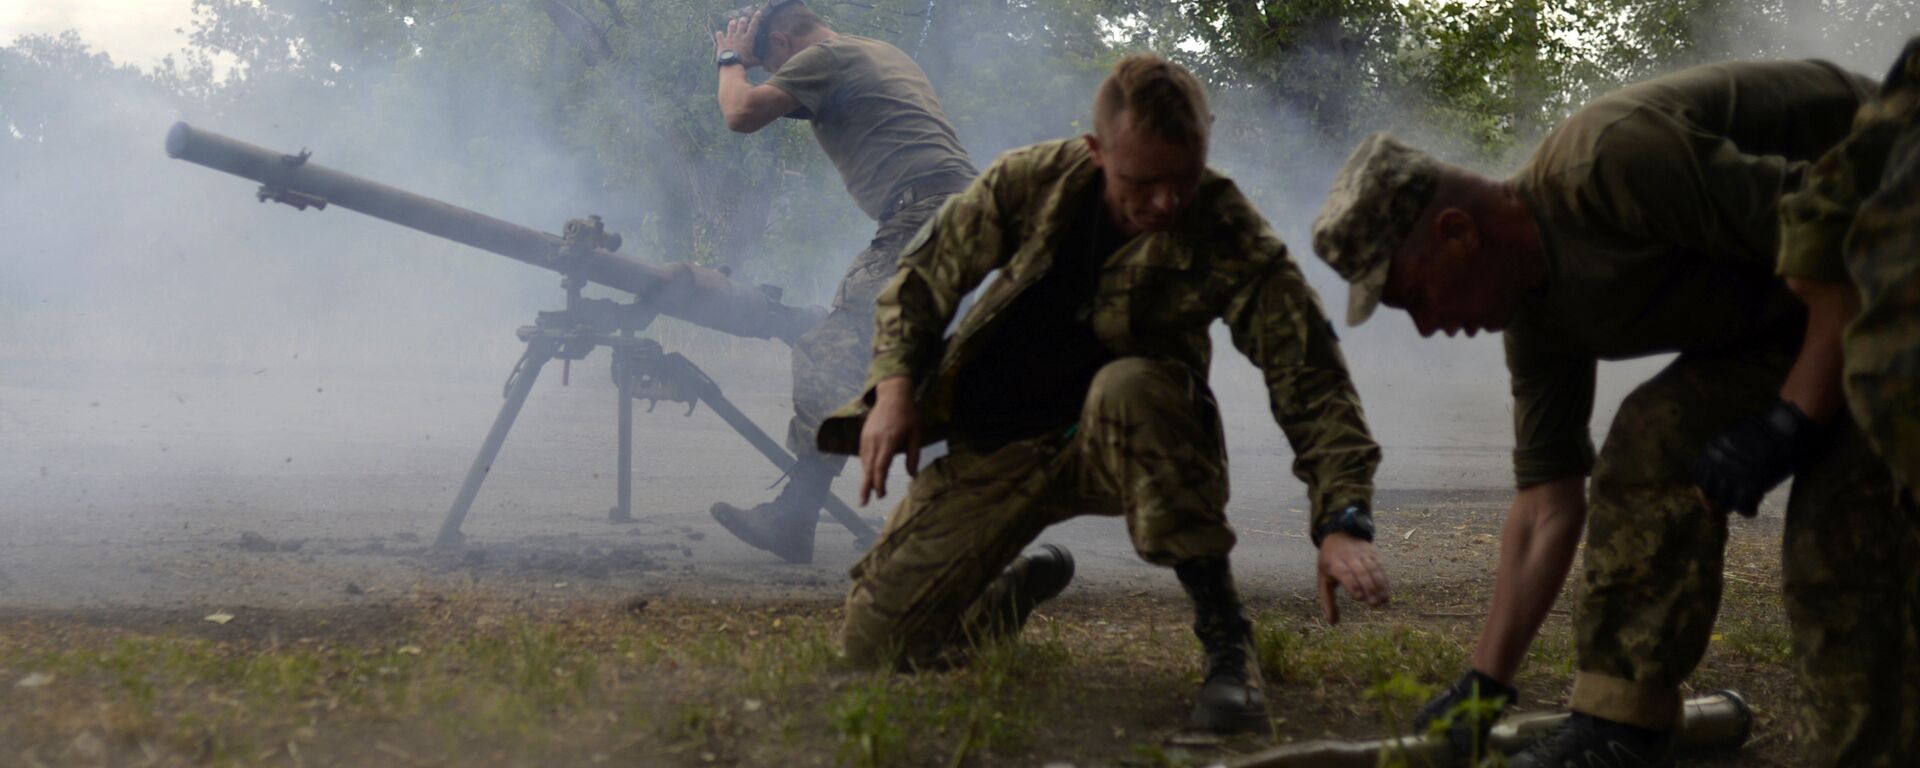 Ukrajinska vojska ispaljuje protivtenkovske granate u borbi protiv ustanika u Donbasu - Sputnik Srbija, 1920, 21.04.2021